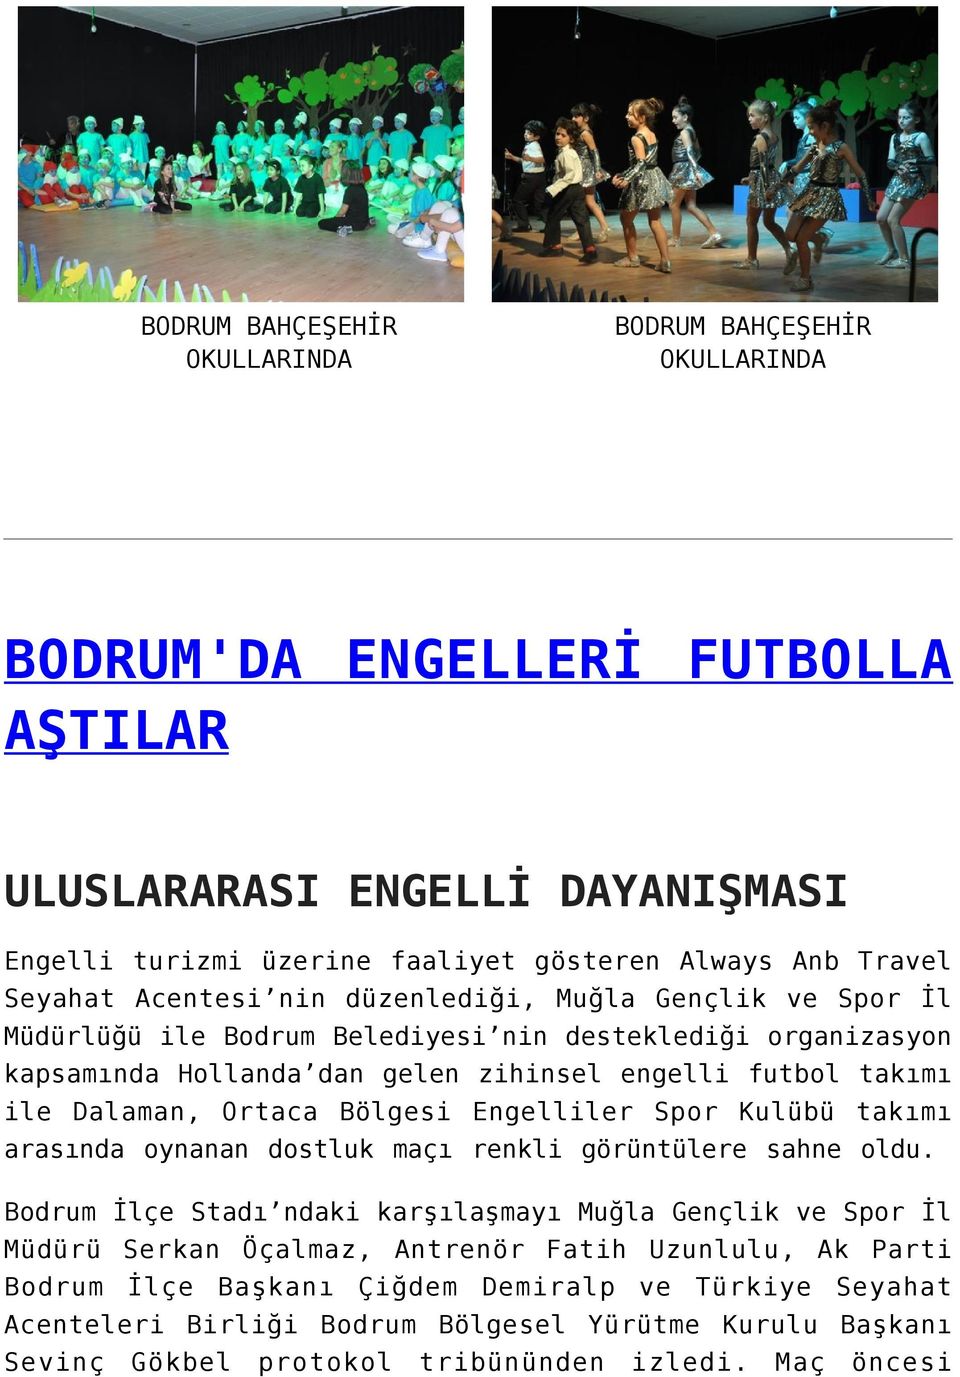 Dalaman, Ortaca Bölgesi Engelliler Spor Kulübü takımı arasında oynanan dostluk maçı renkli görüntülere sahne oldu.